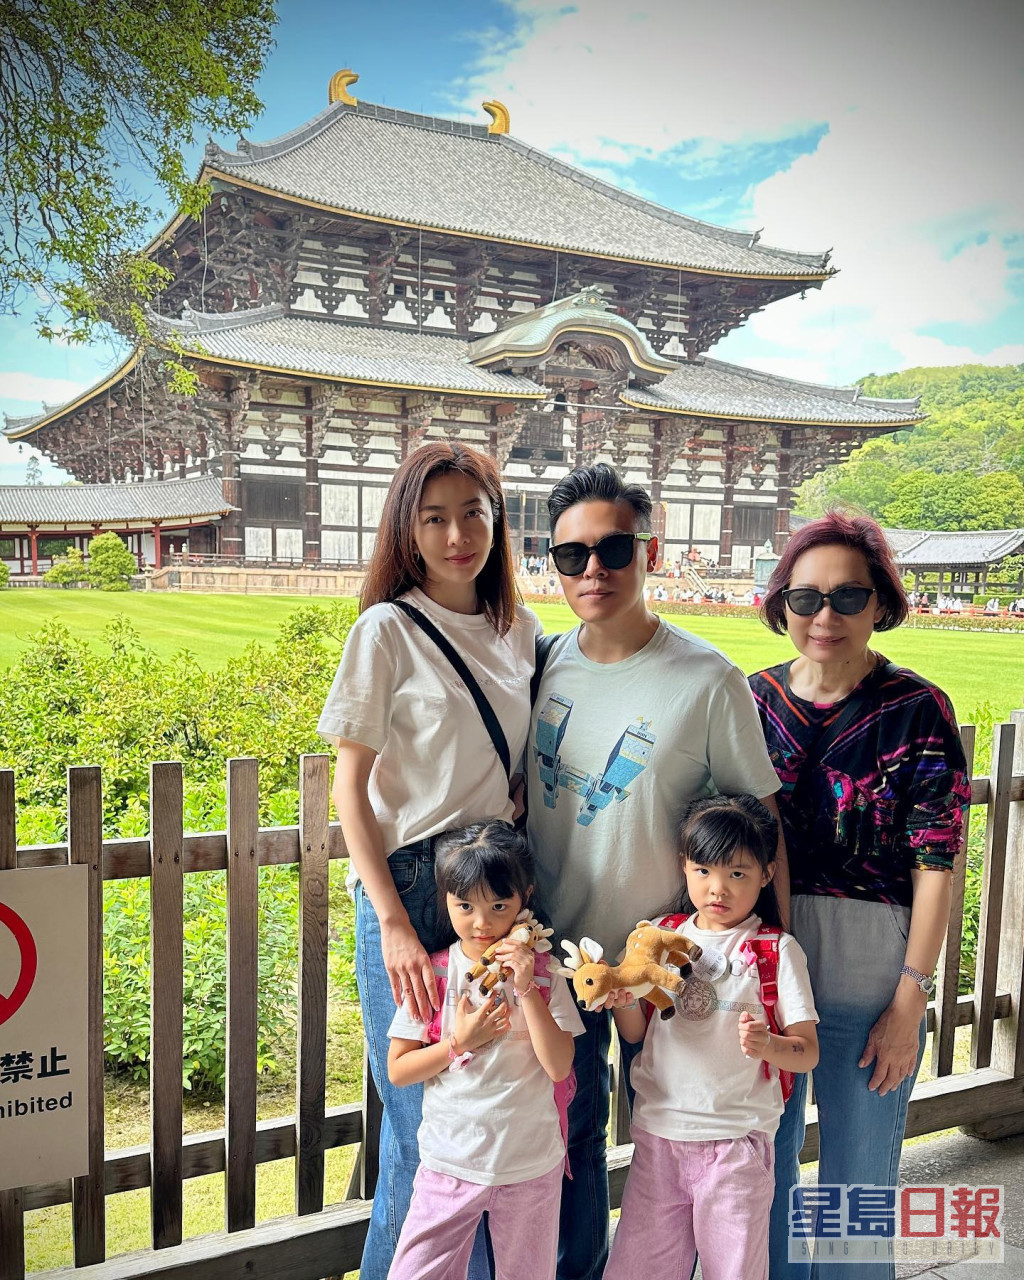 熊黛林早前抽时间陪家人到日本旅行。